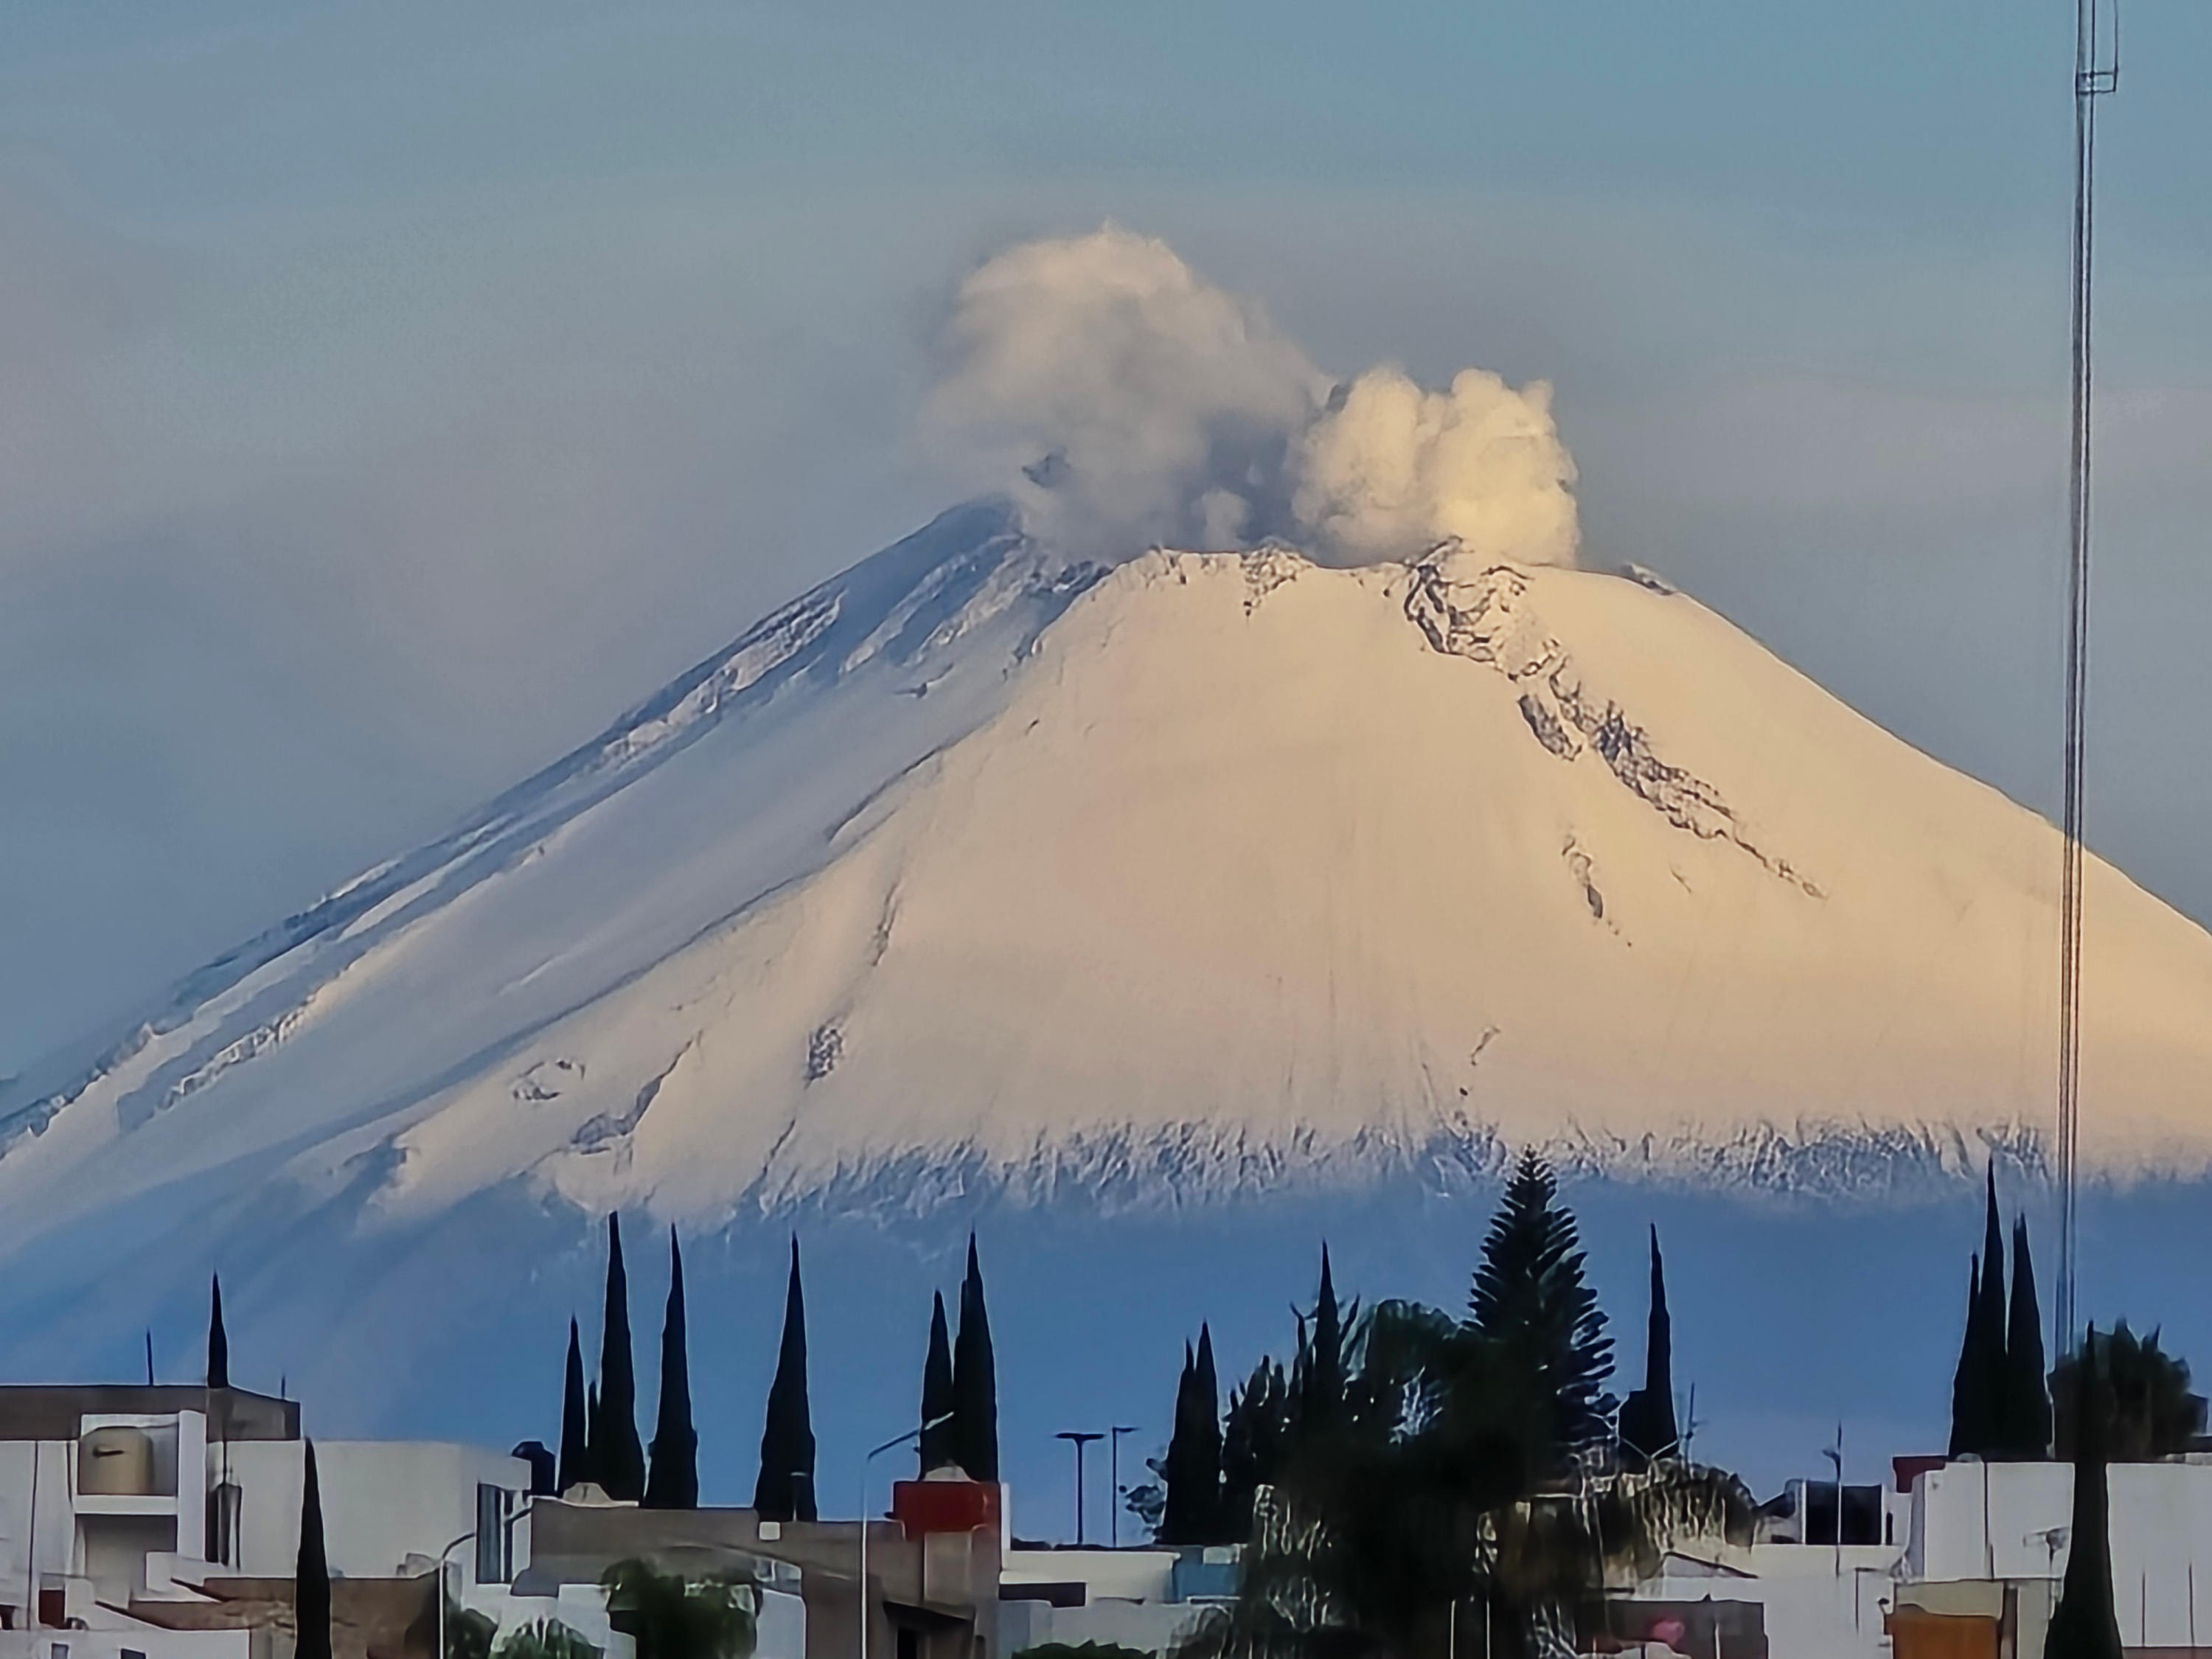 Una bella postal, amanece nevado el Volcán Popocatépetl